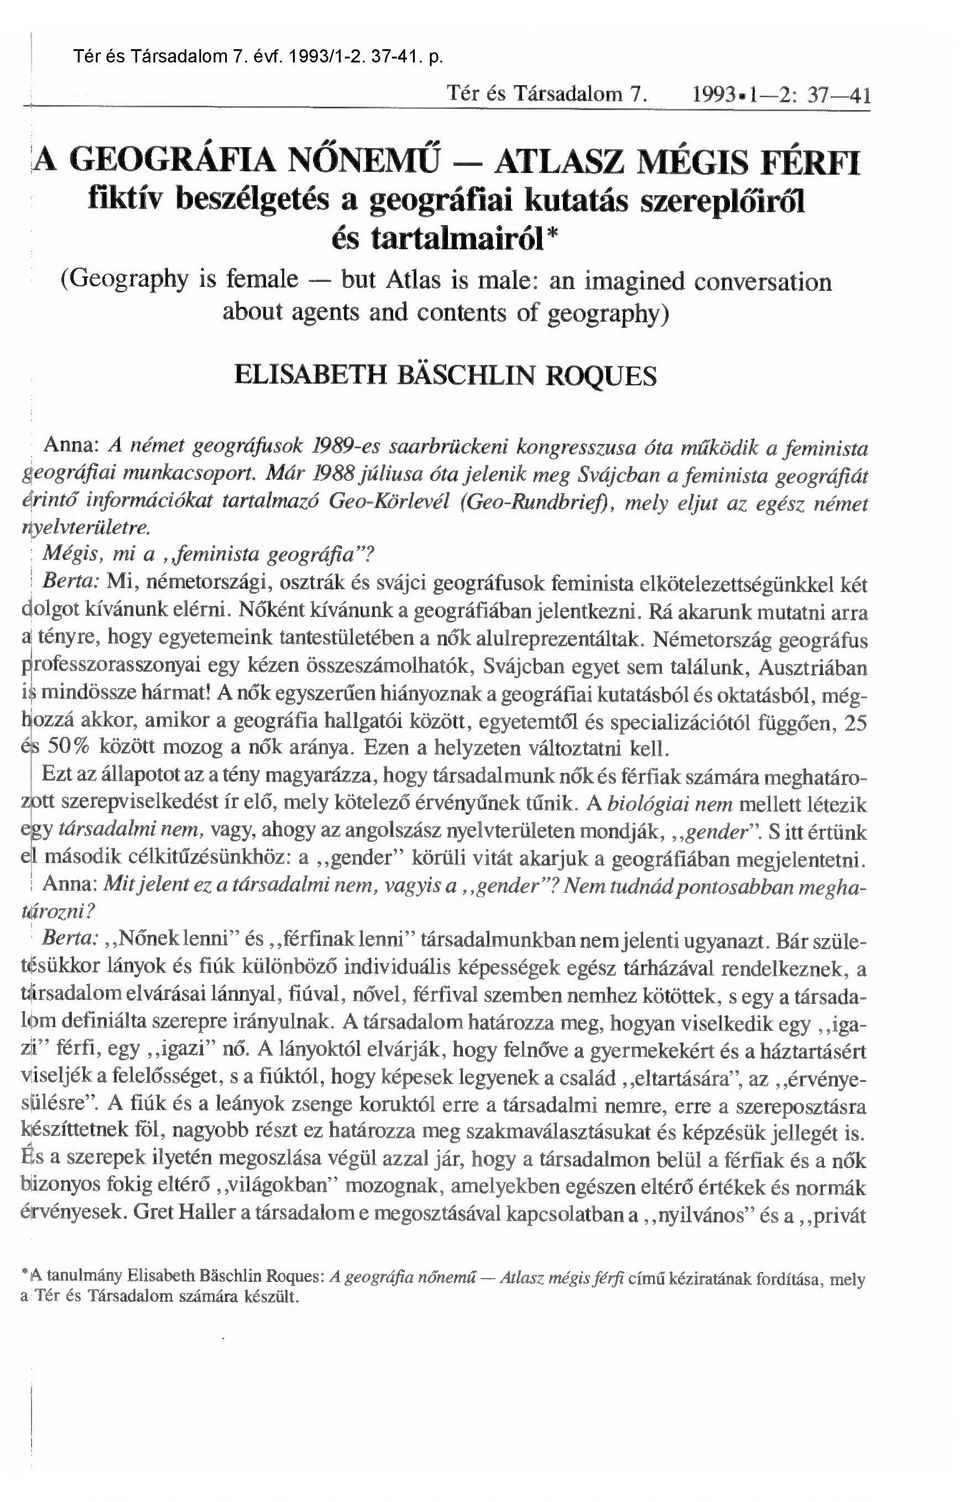 and contents of geography) ELISABETH BÁSCHLIN ROQUES Anna: A német geográfusok 1989-es saarbrückeni kongresszusa óta m űködik a feminista geográfiai munkacsoport.